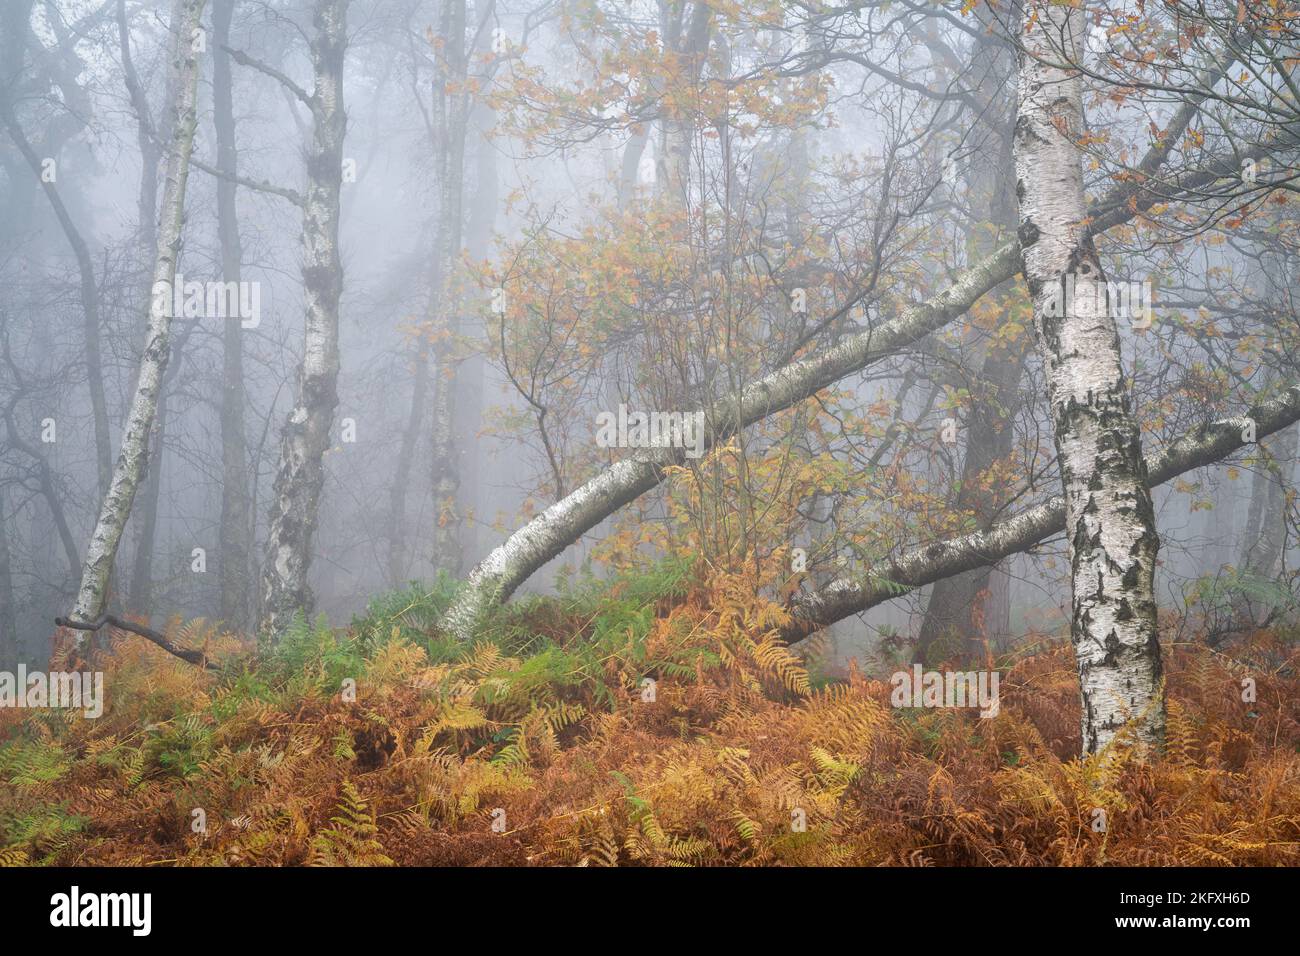 La sous-croissance récupère rapidement le bouleau argenté tombé dans une scène boisée chaotique sur Otley Chevin, avec le paysage enveloppé dans un brouillard épais. Banque D'Images